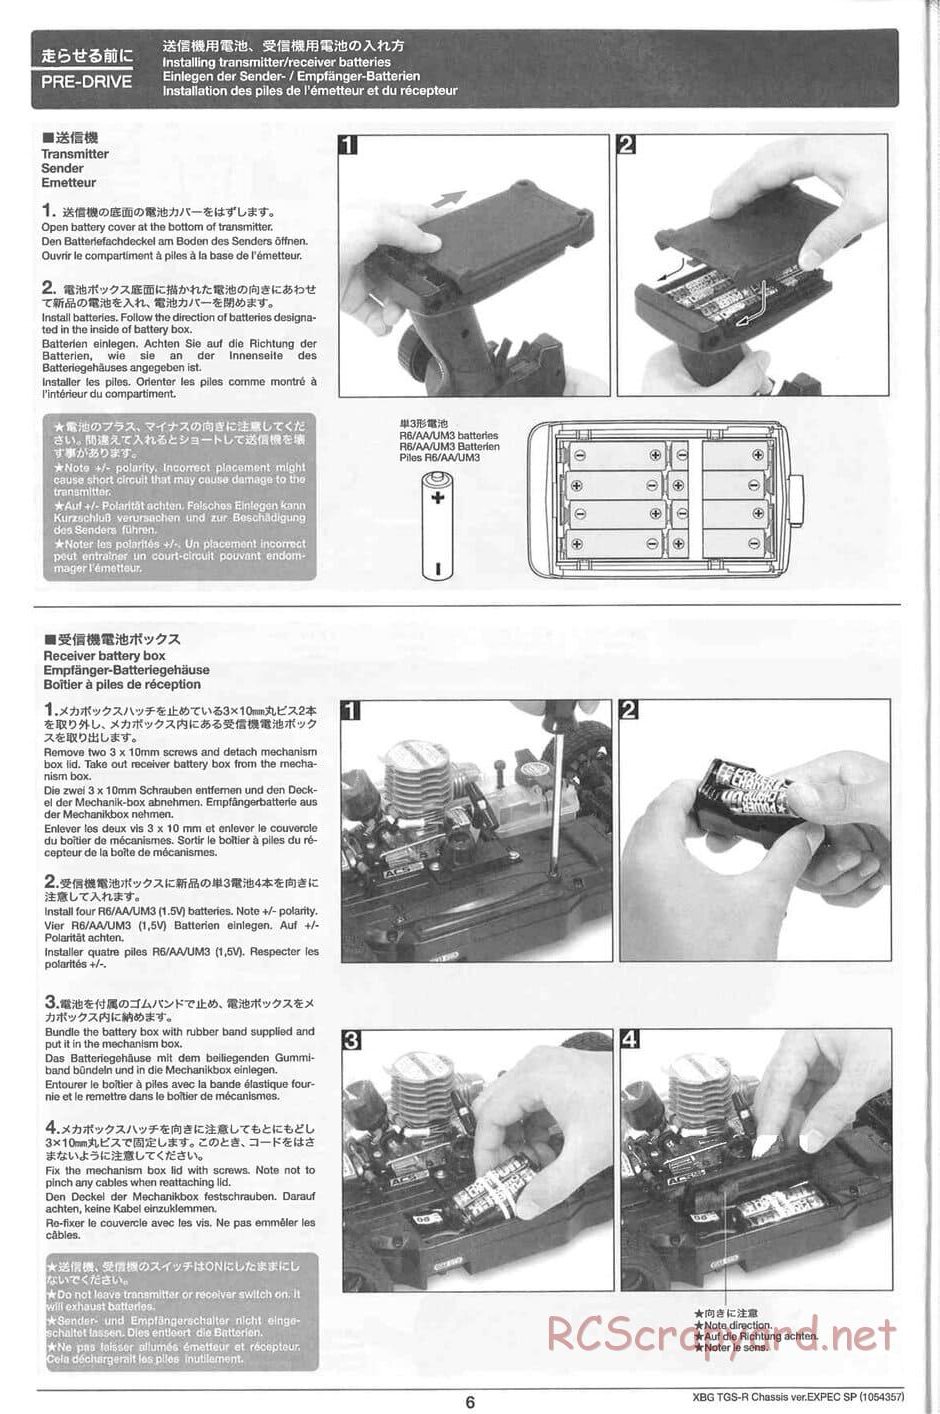 Tamiya - TGS-R Chassis - Manual - Page 6